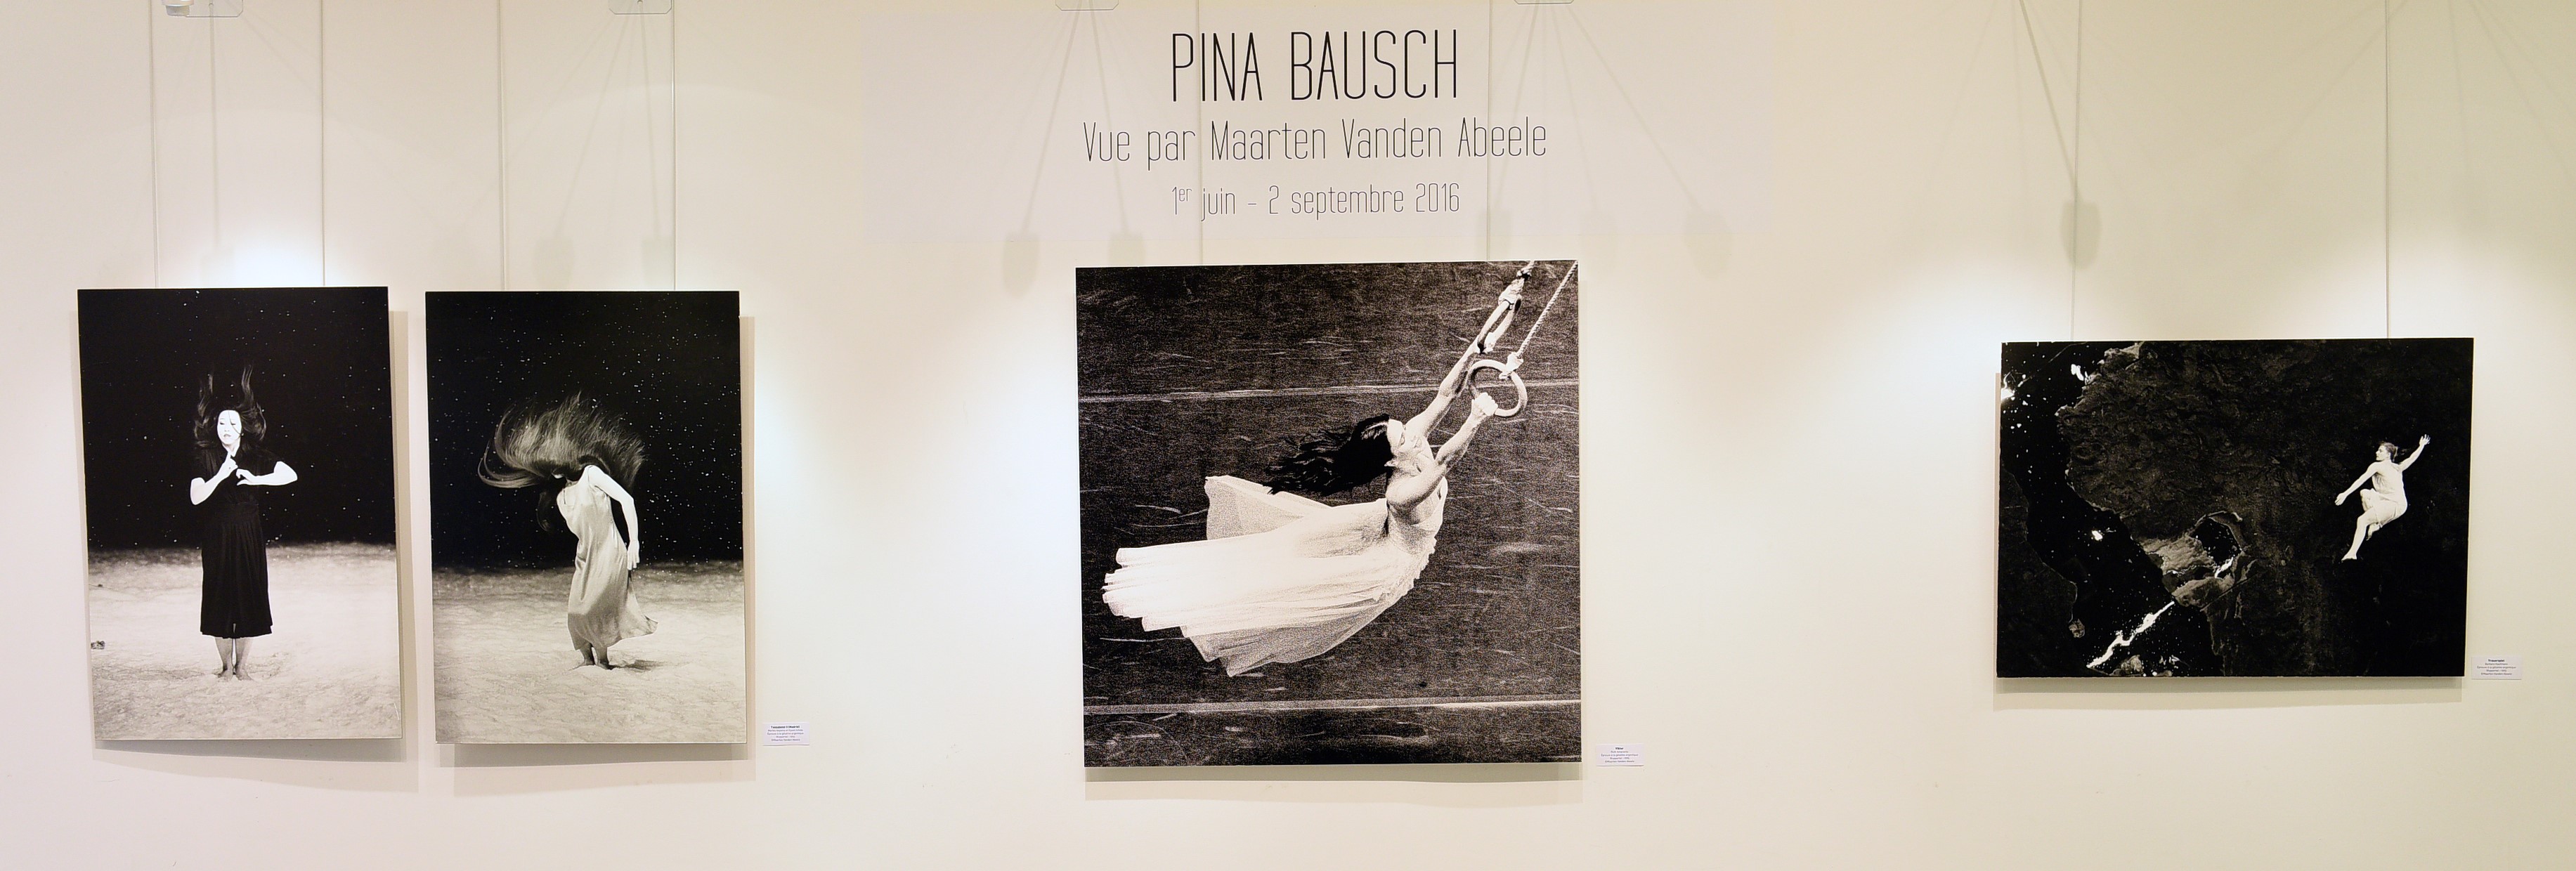 Mostra Pina Bausch